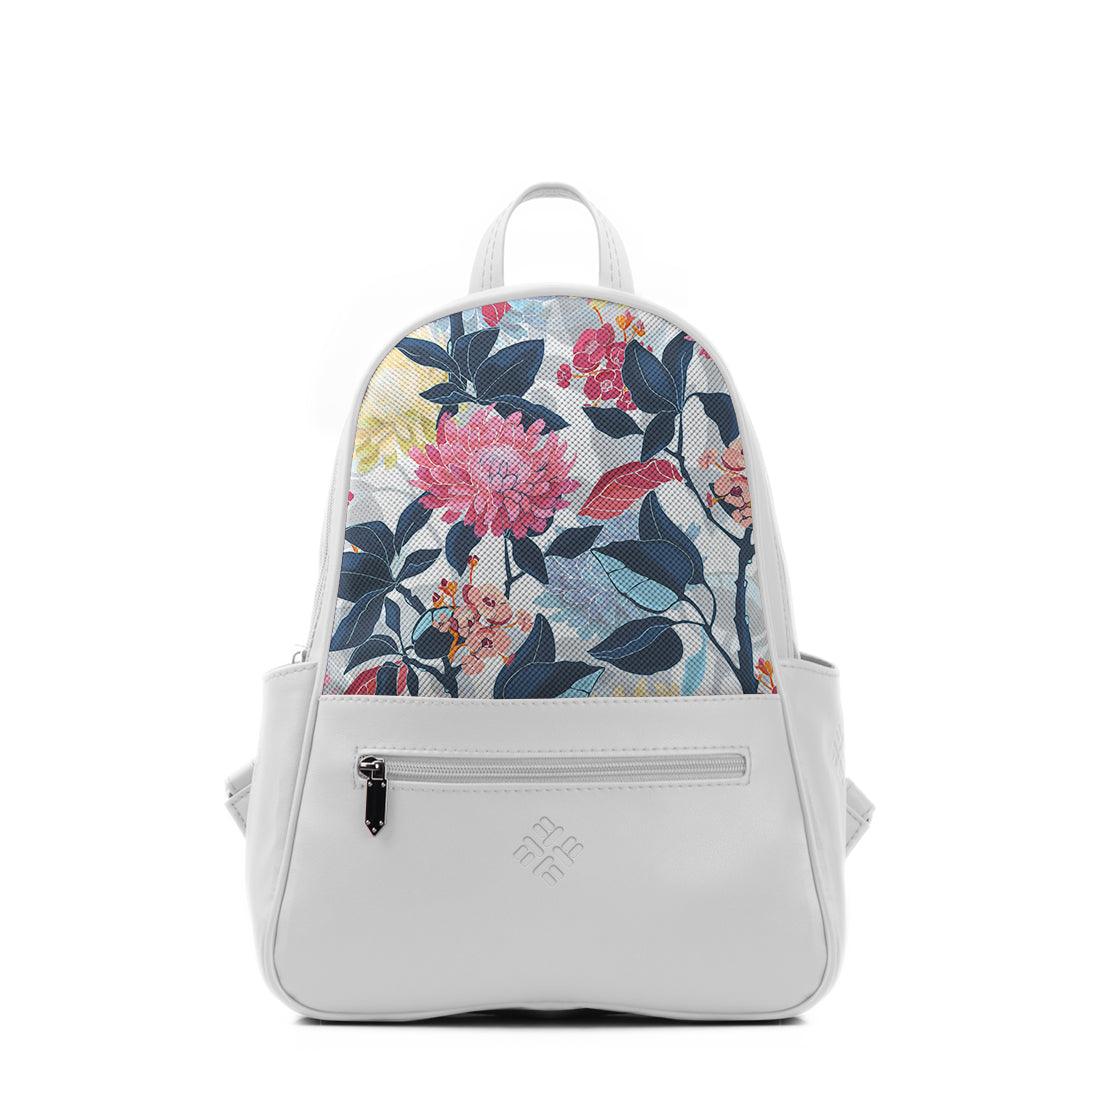 White Vivid Backpack Flowers Art - CANVAEGYPT